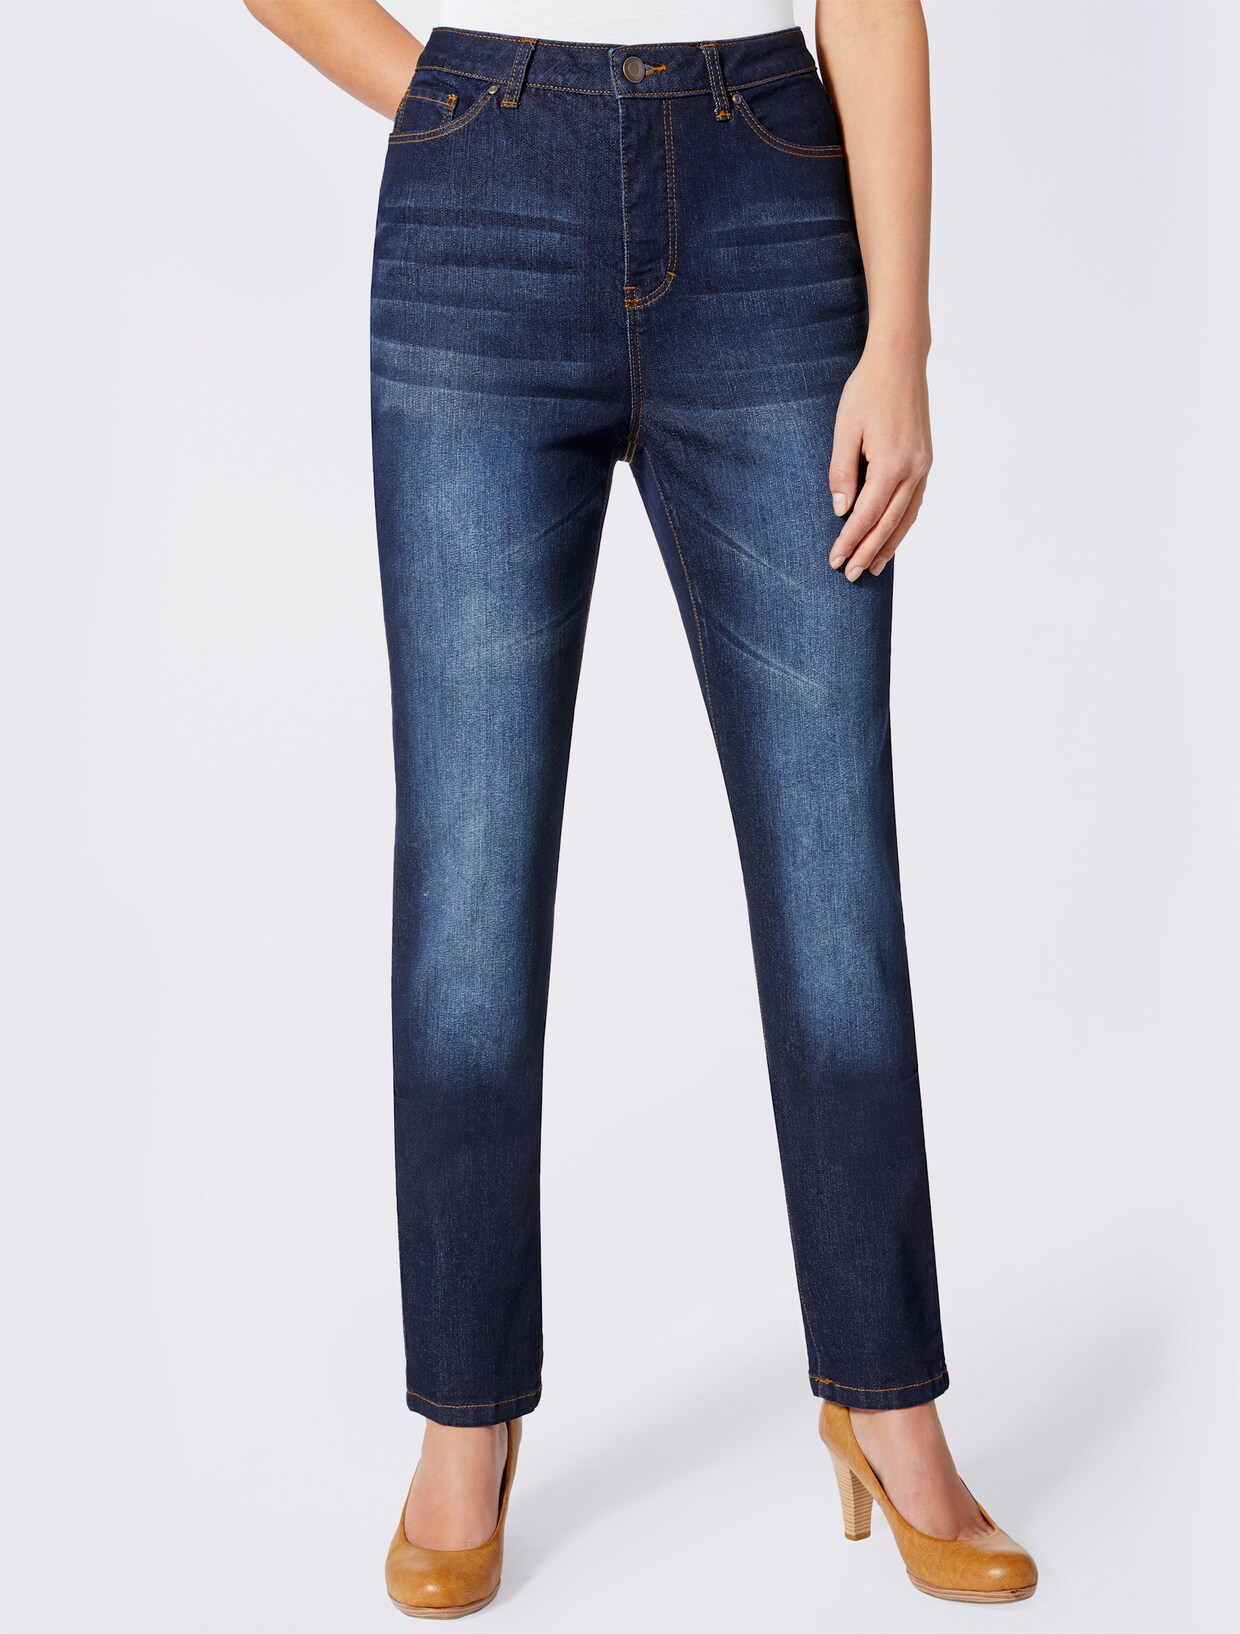 5-pocket jeans - blue-stonewashed